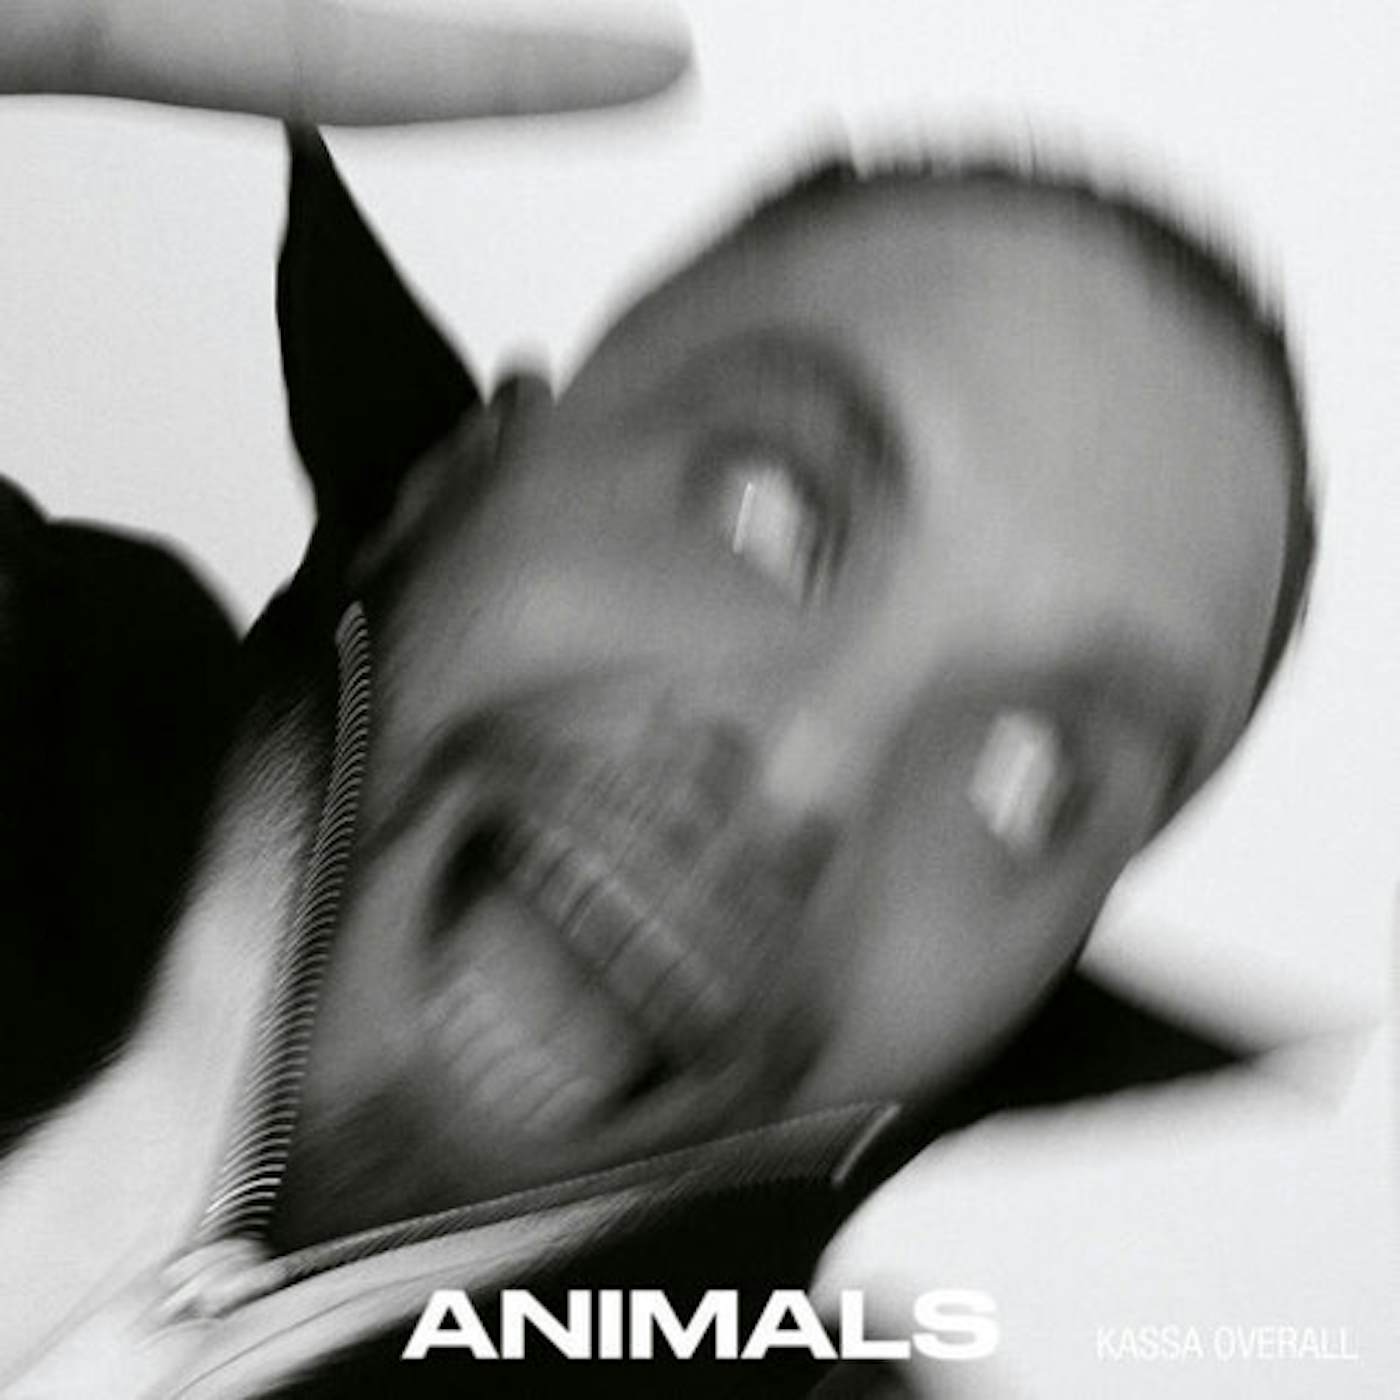 Kassa Overall ANIMALS Vinyl Record